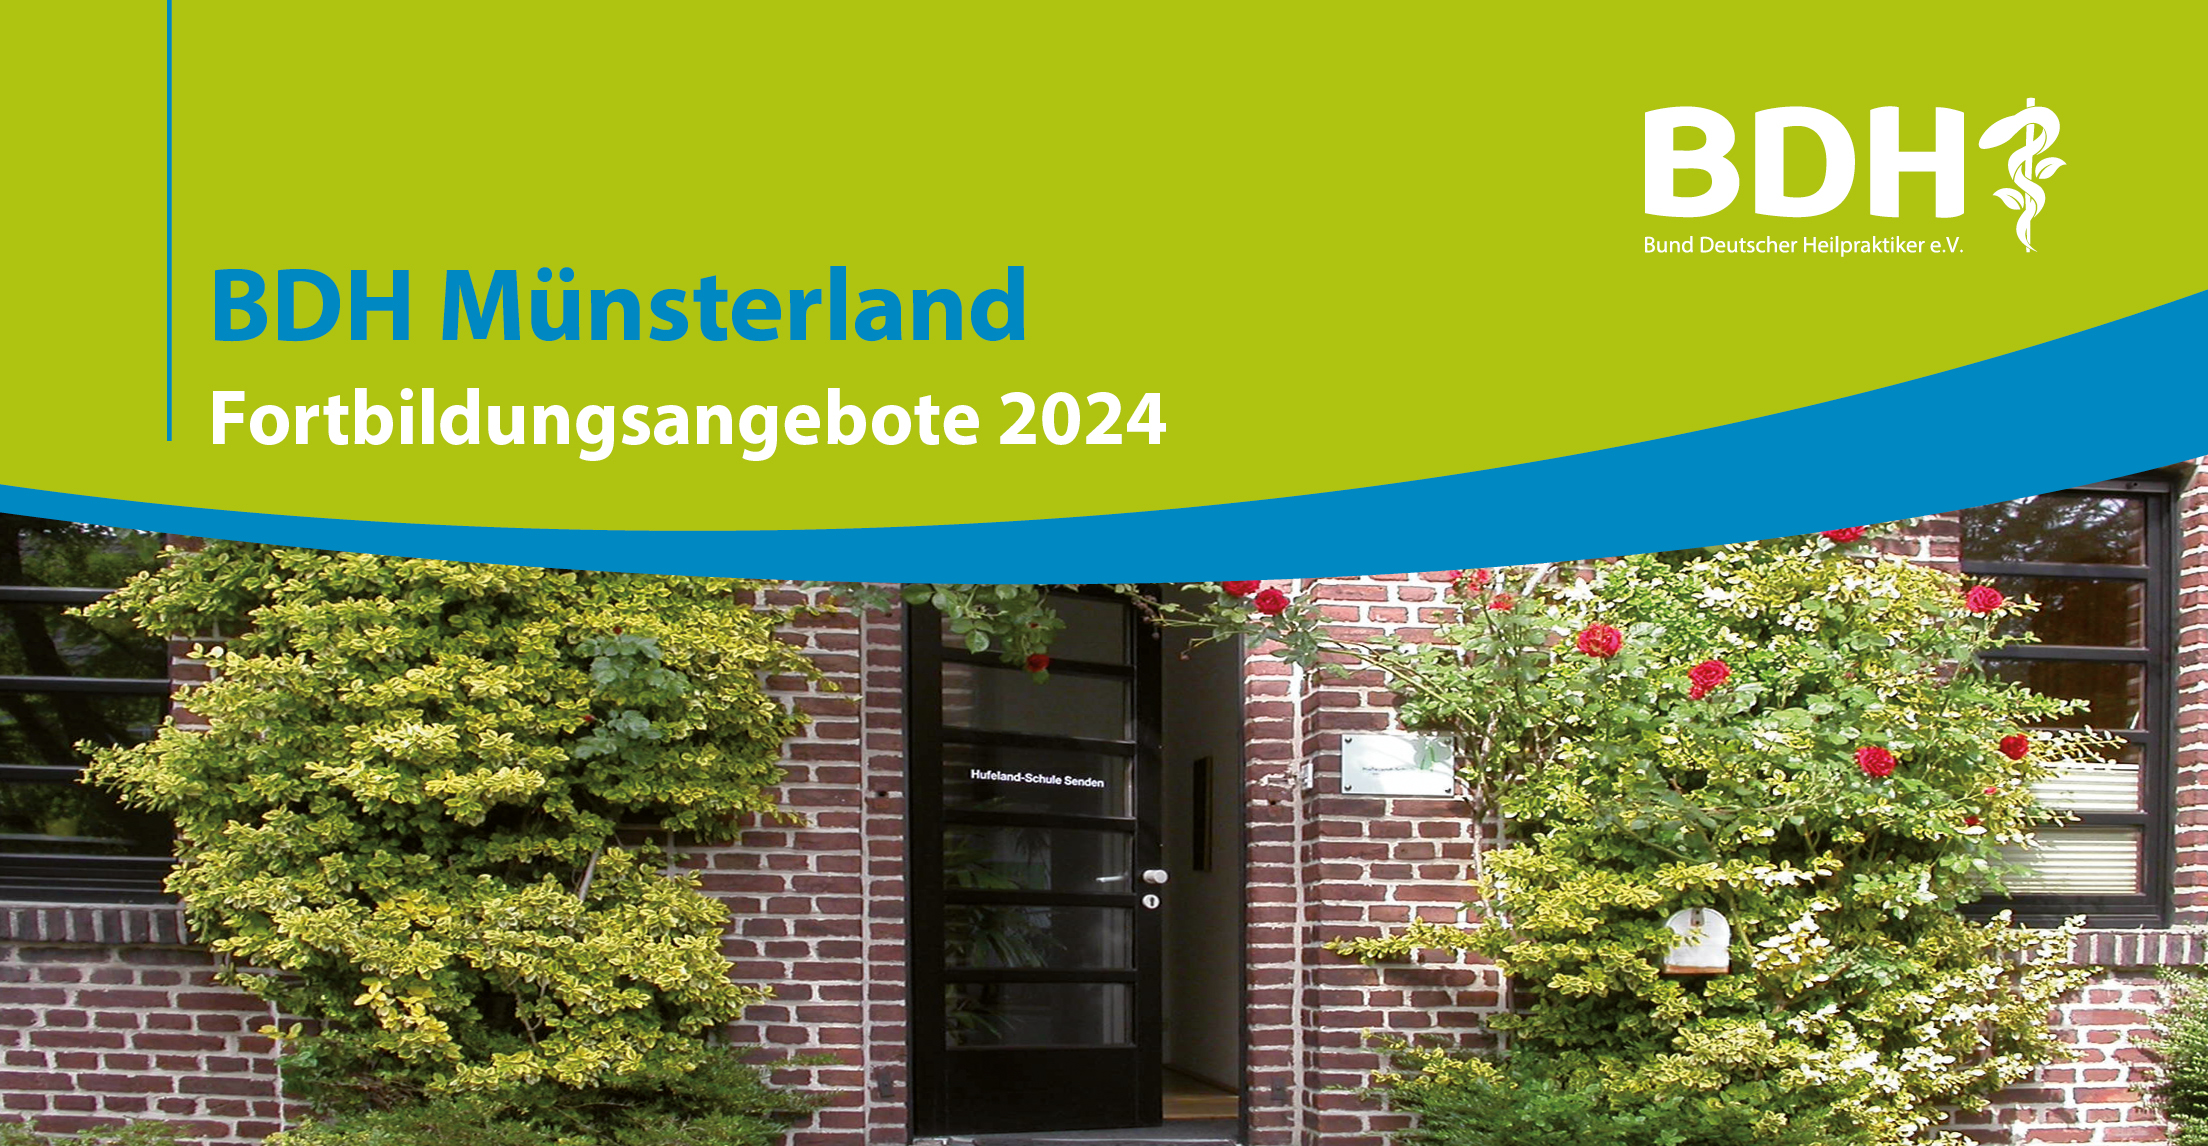 BDH-Fortbildungen im Münsterland - Programm 2024 jetzt online